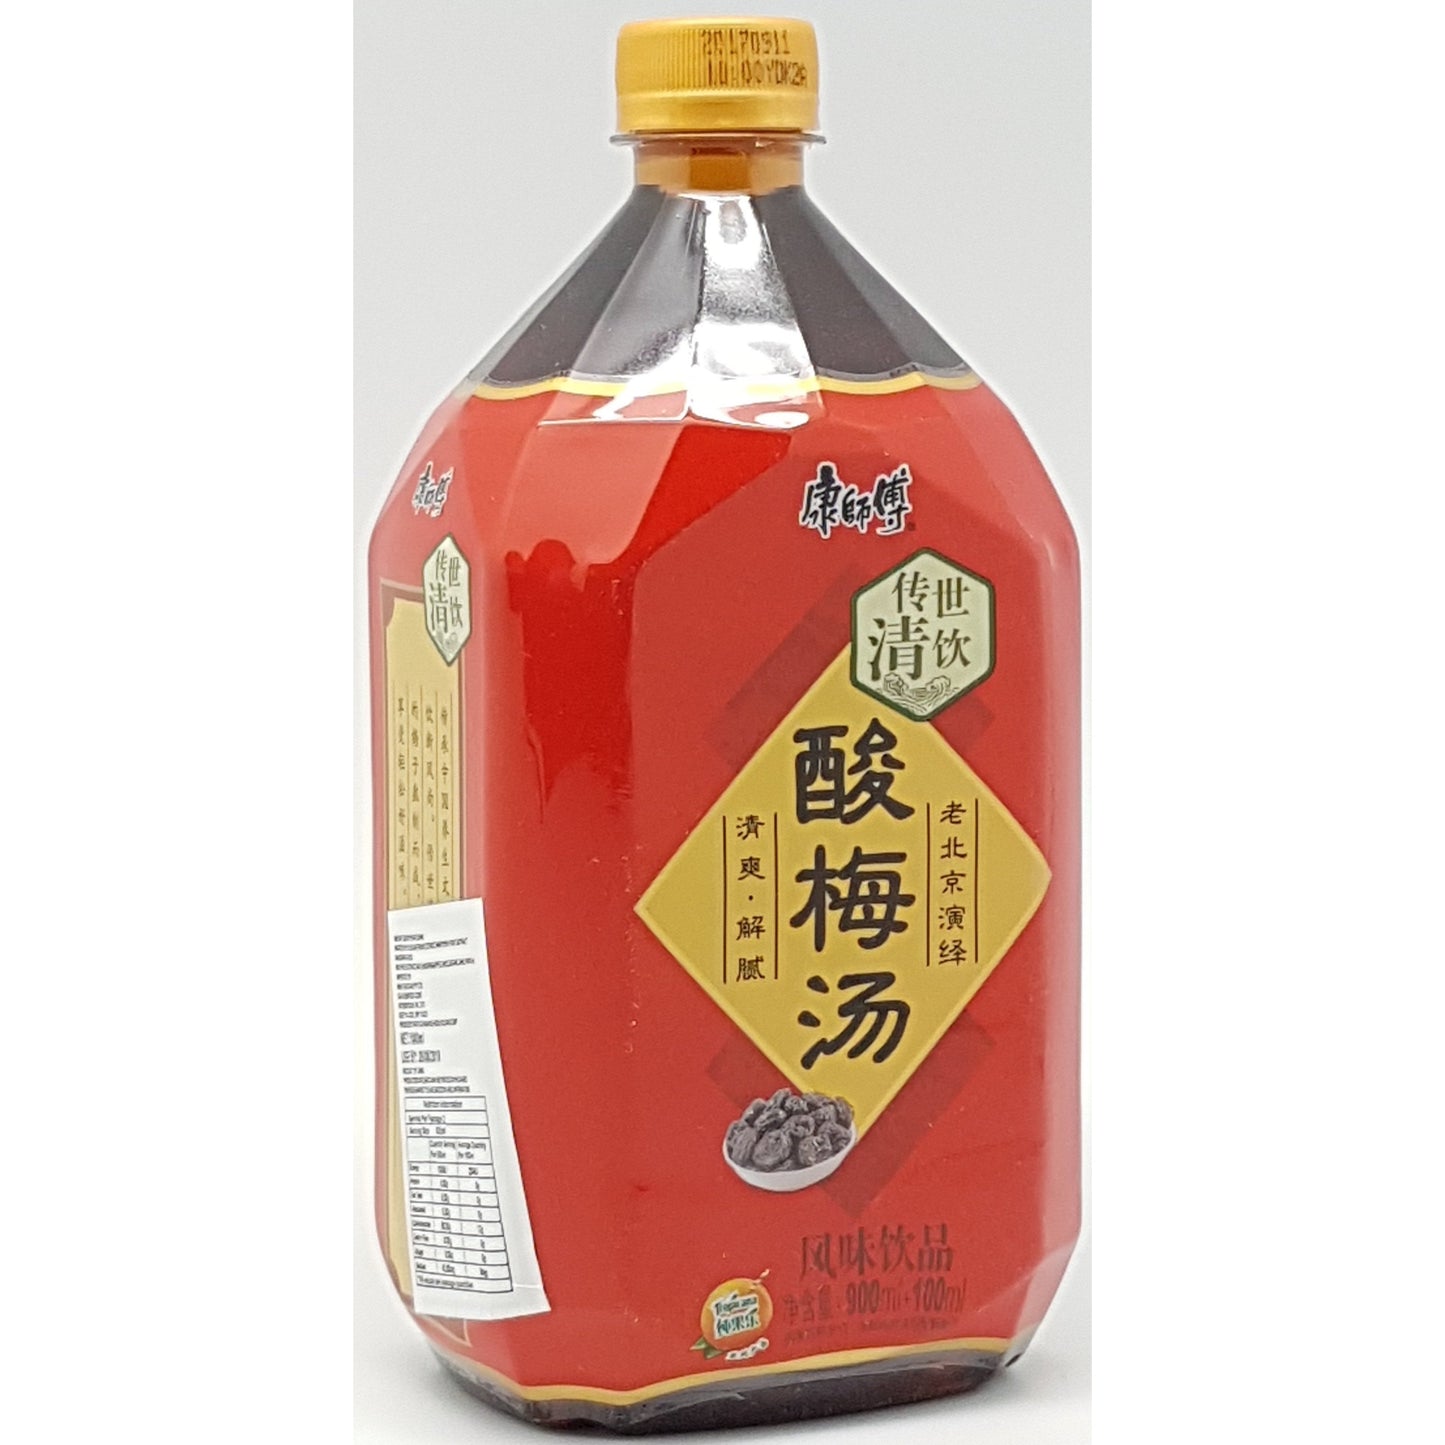 B005AL Kon Brand - Plum Drink  1L - 8 bot/1ctn - New Eastland Pty Ltd - Asian food wholesalers